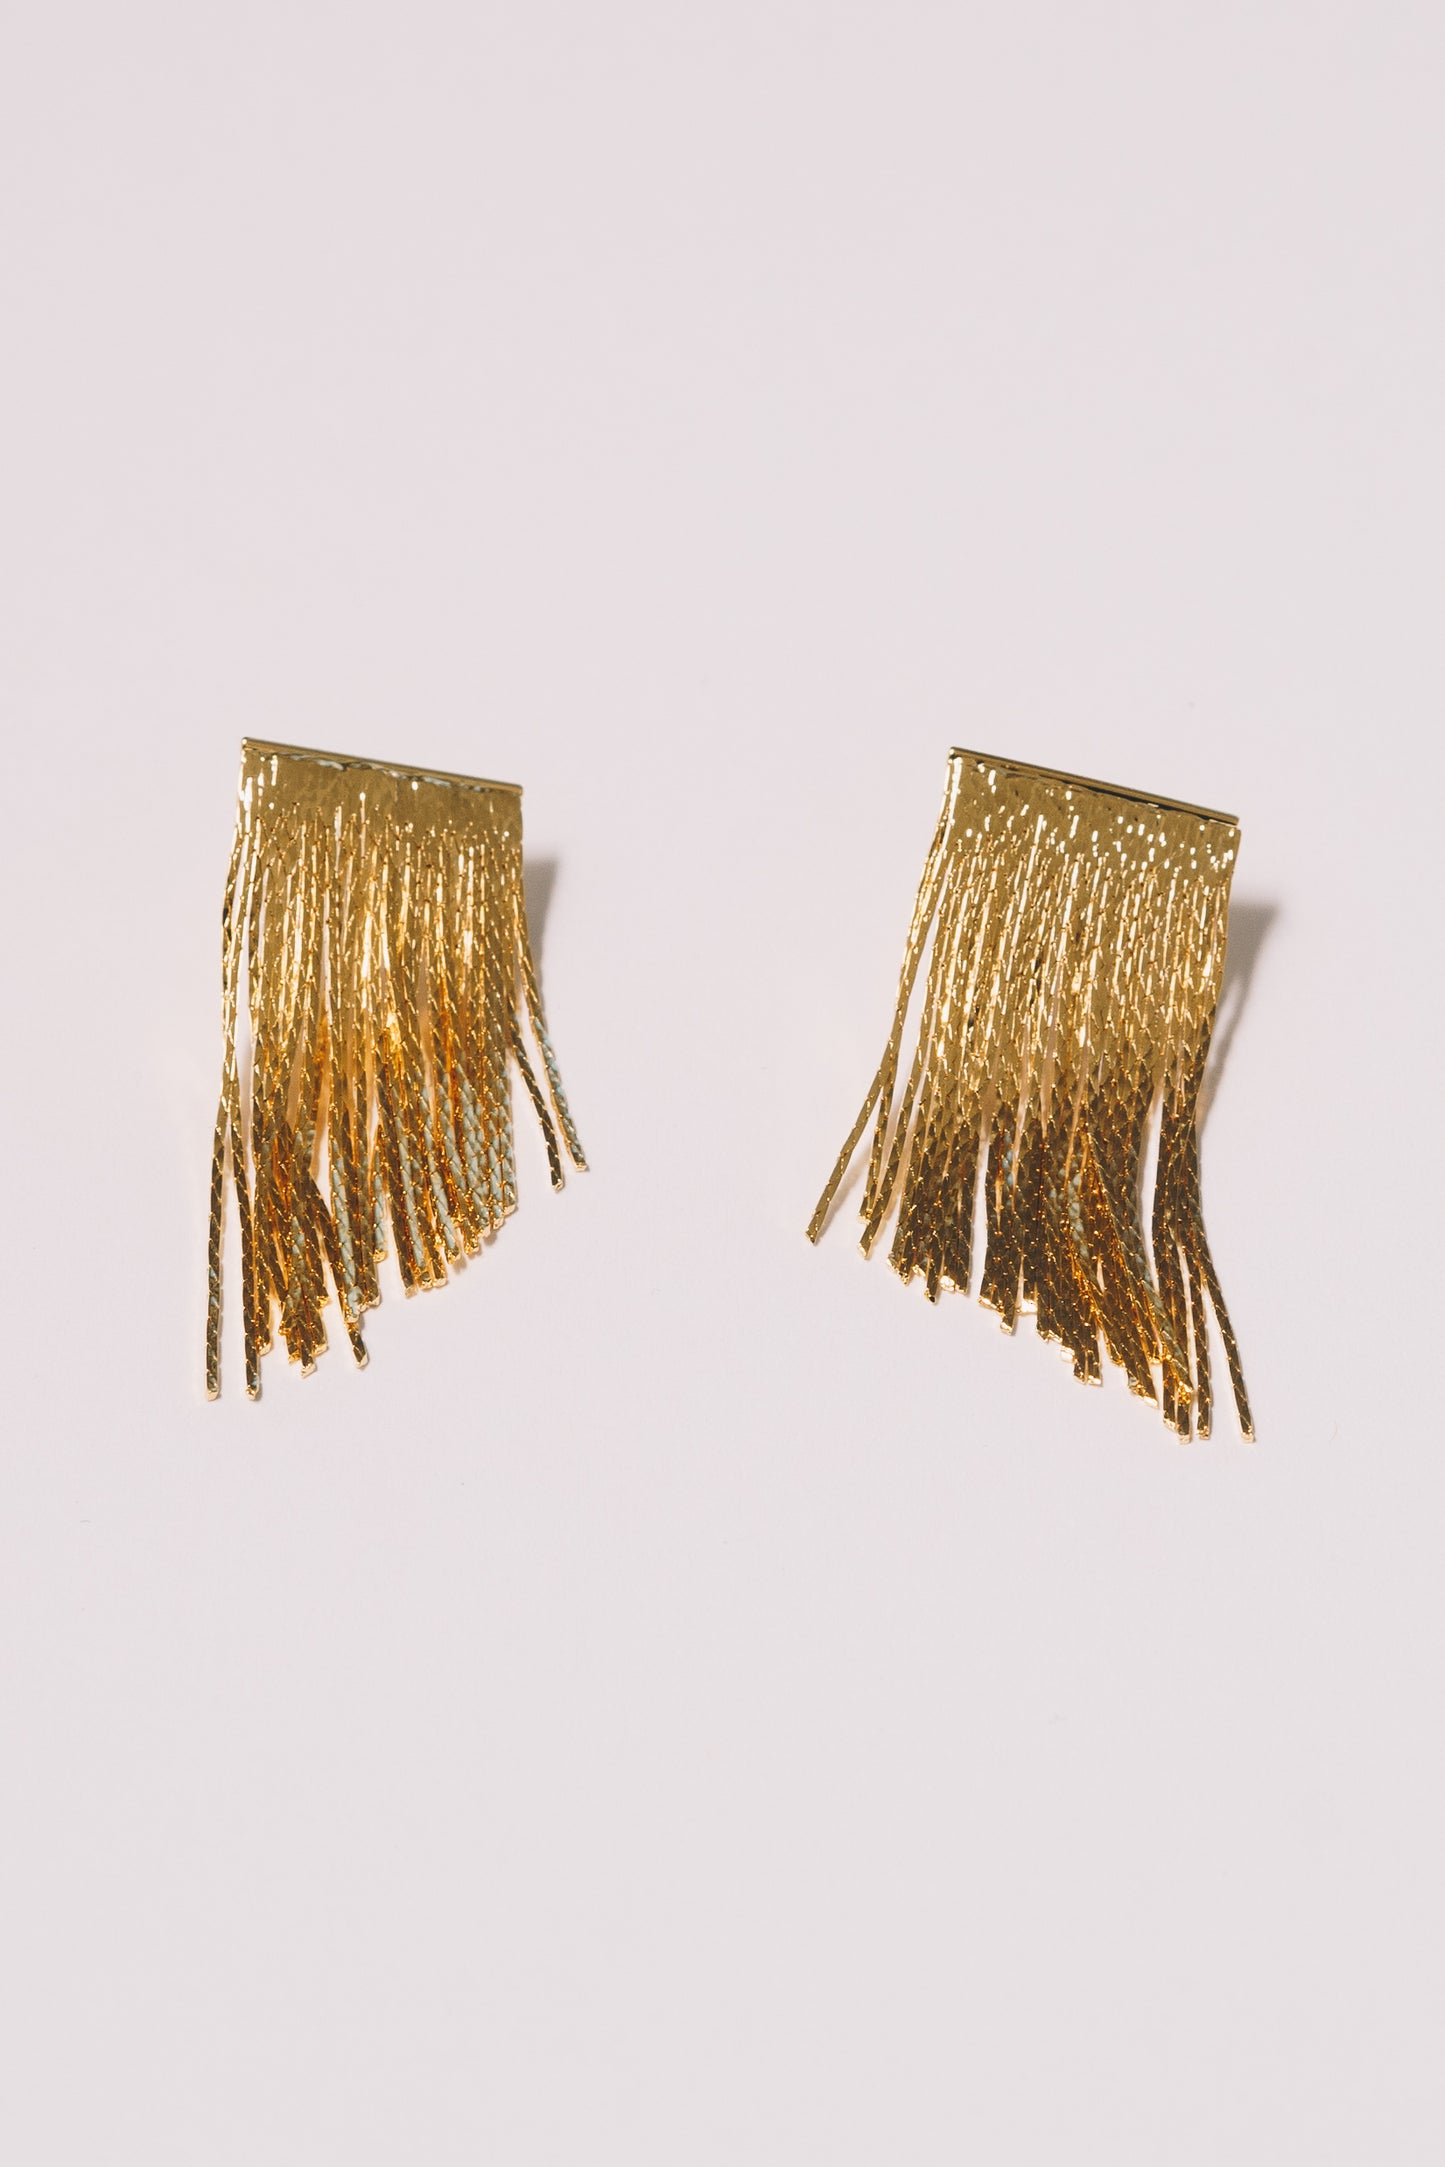 gold fringe stud earrings on white background